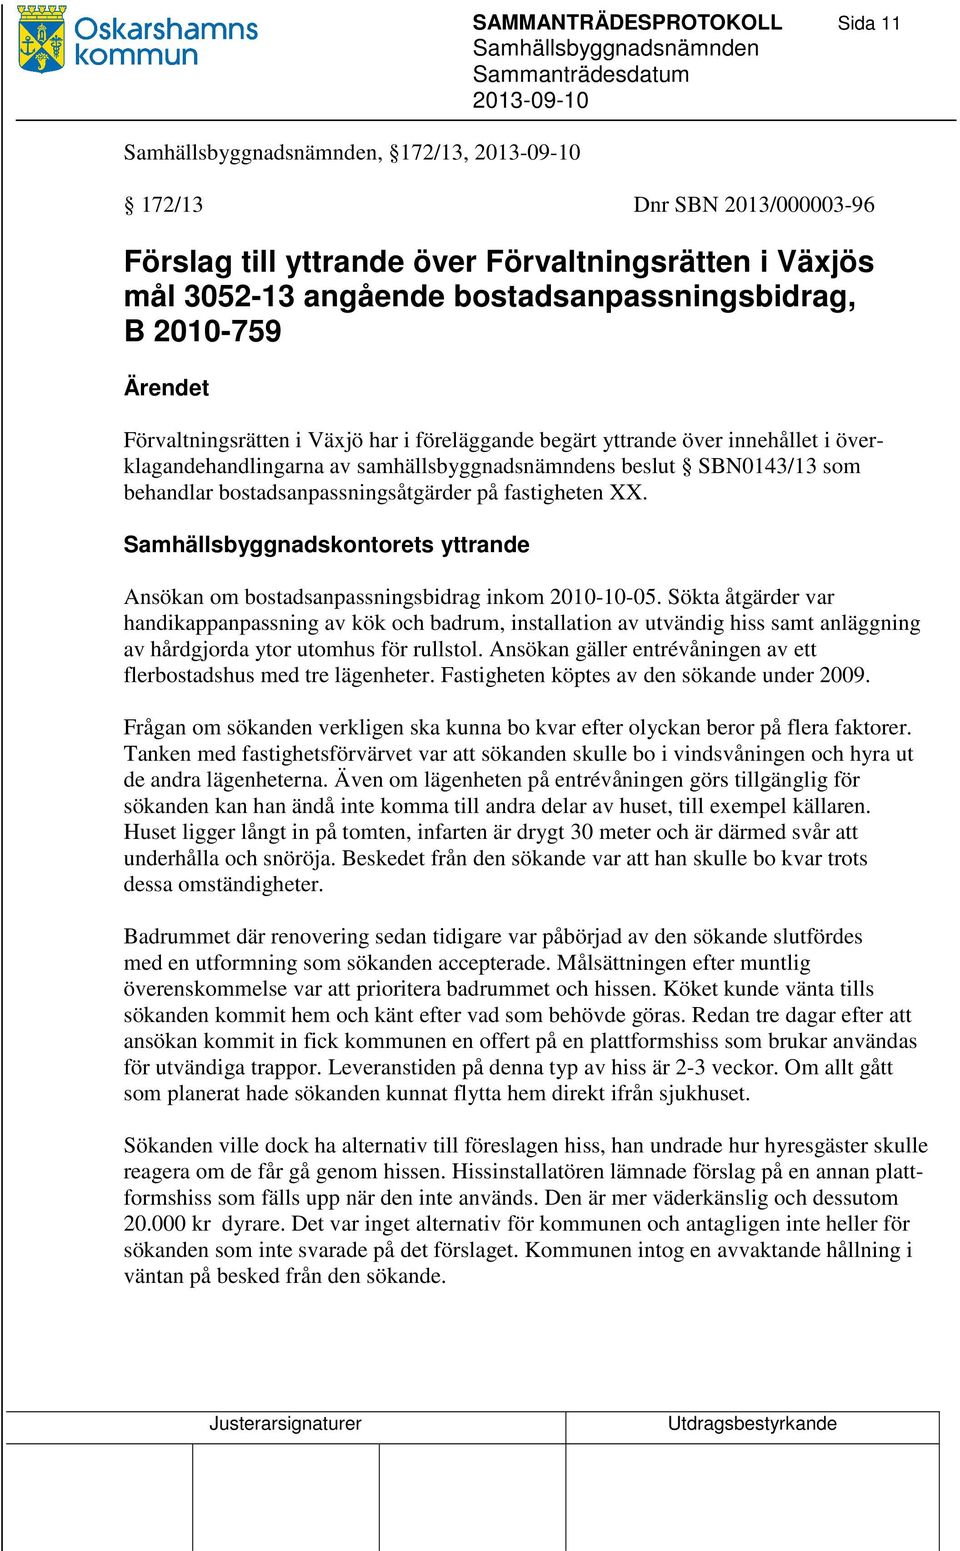 fastigheten XX. Samhällsbyggnadskontorets yttrande Ansökan om bostadsanpassningsbidrag inkom 2010-10-05.